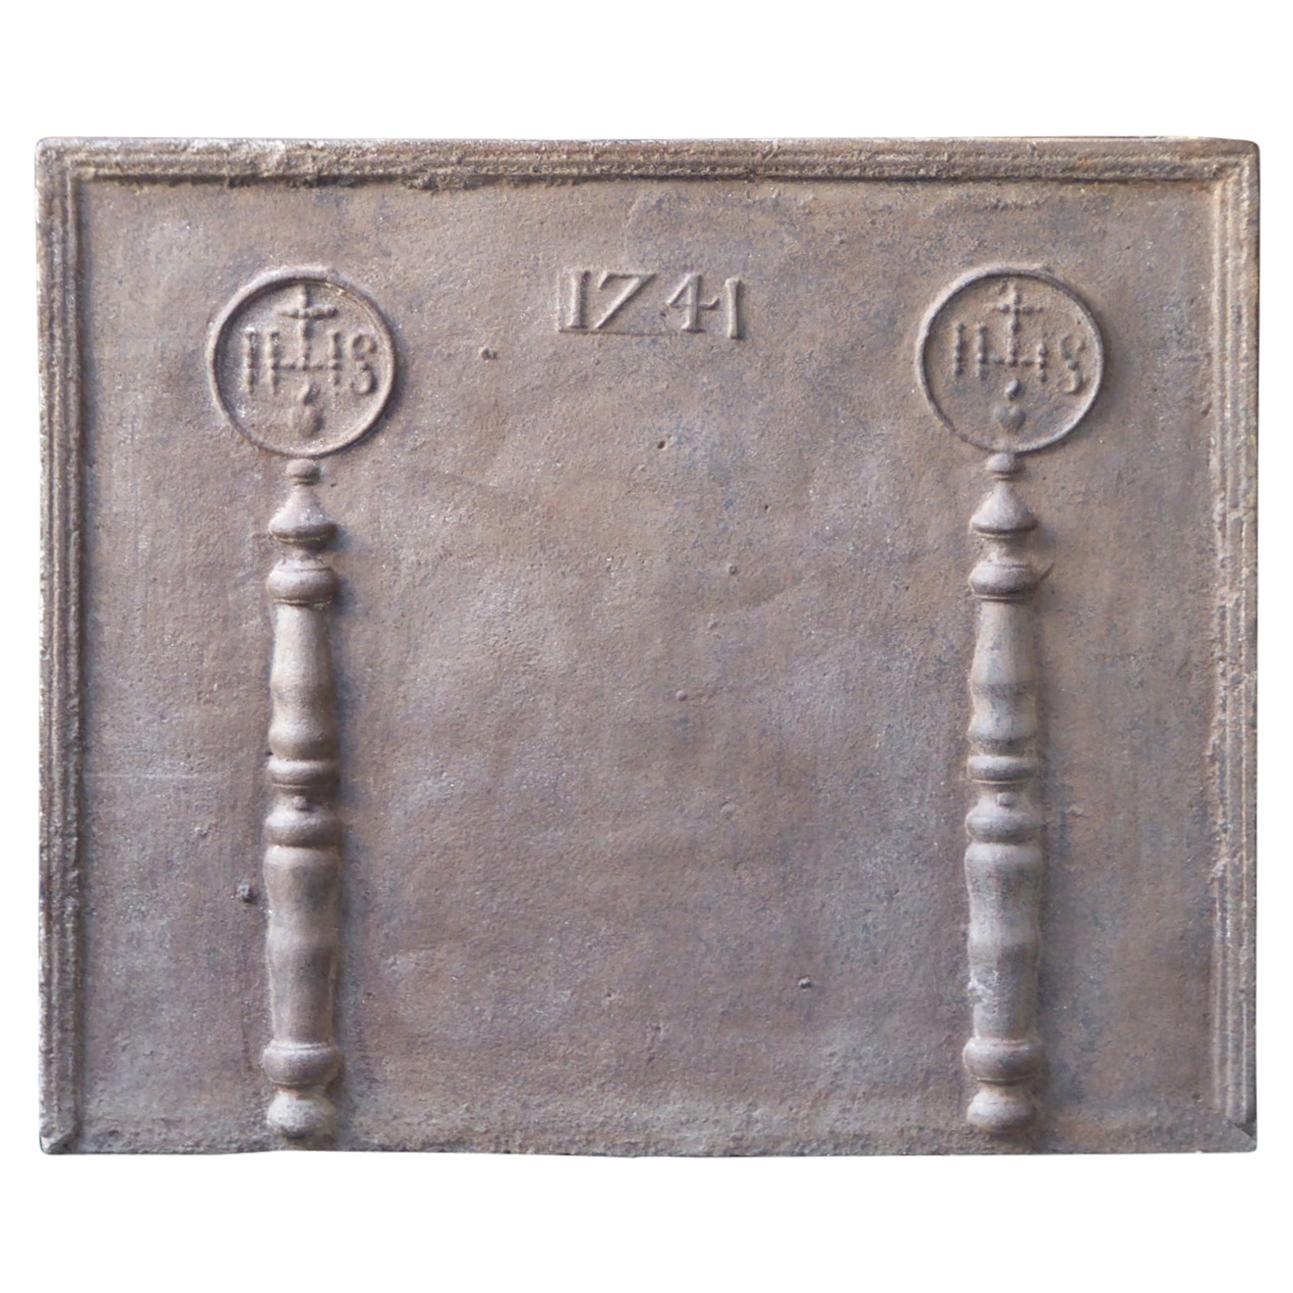 Französische Kaminplatten mit mittelalterlichen IHS-Monogrammen, 18. Jahrhundert